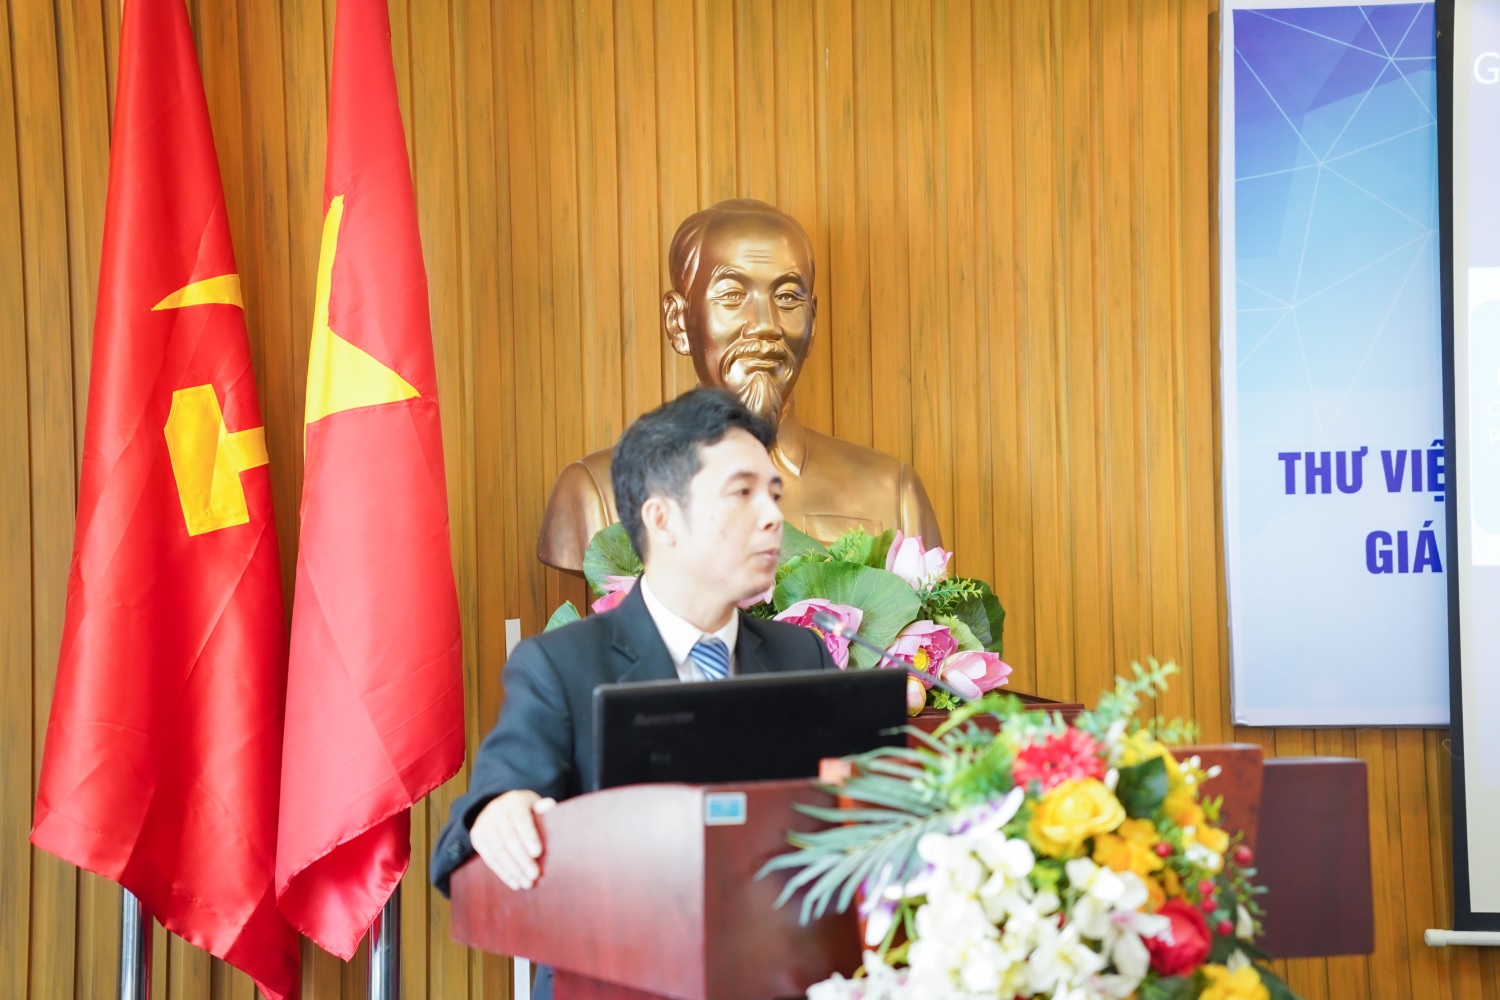 TS. Phạm Quang Quyền, Chủ nhiệm Thư viện, Trung tâm Công nghệ và Thư viện, Học viện Hành chính Quốc gia chia sẻ tại Hội nghị.